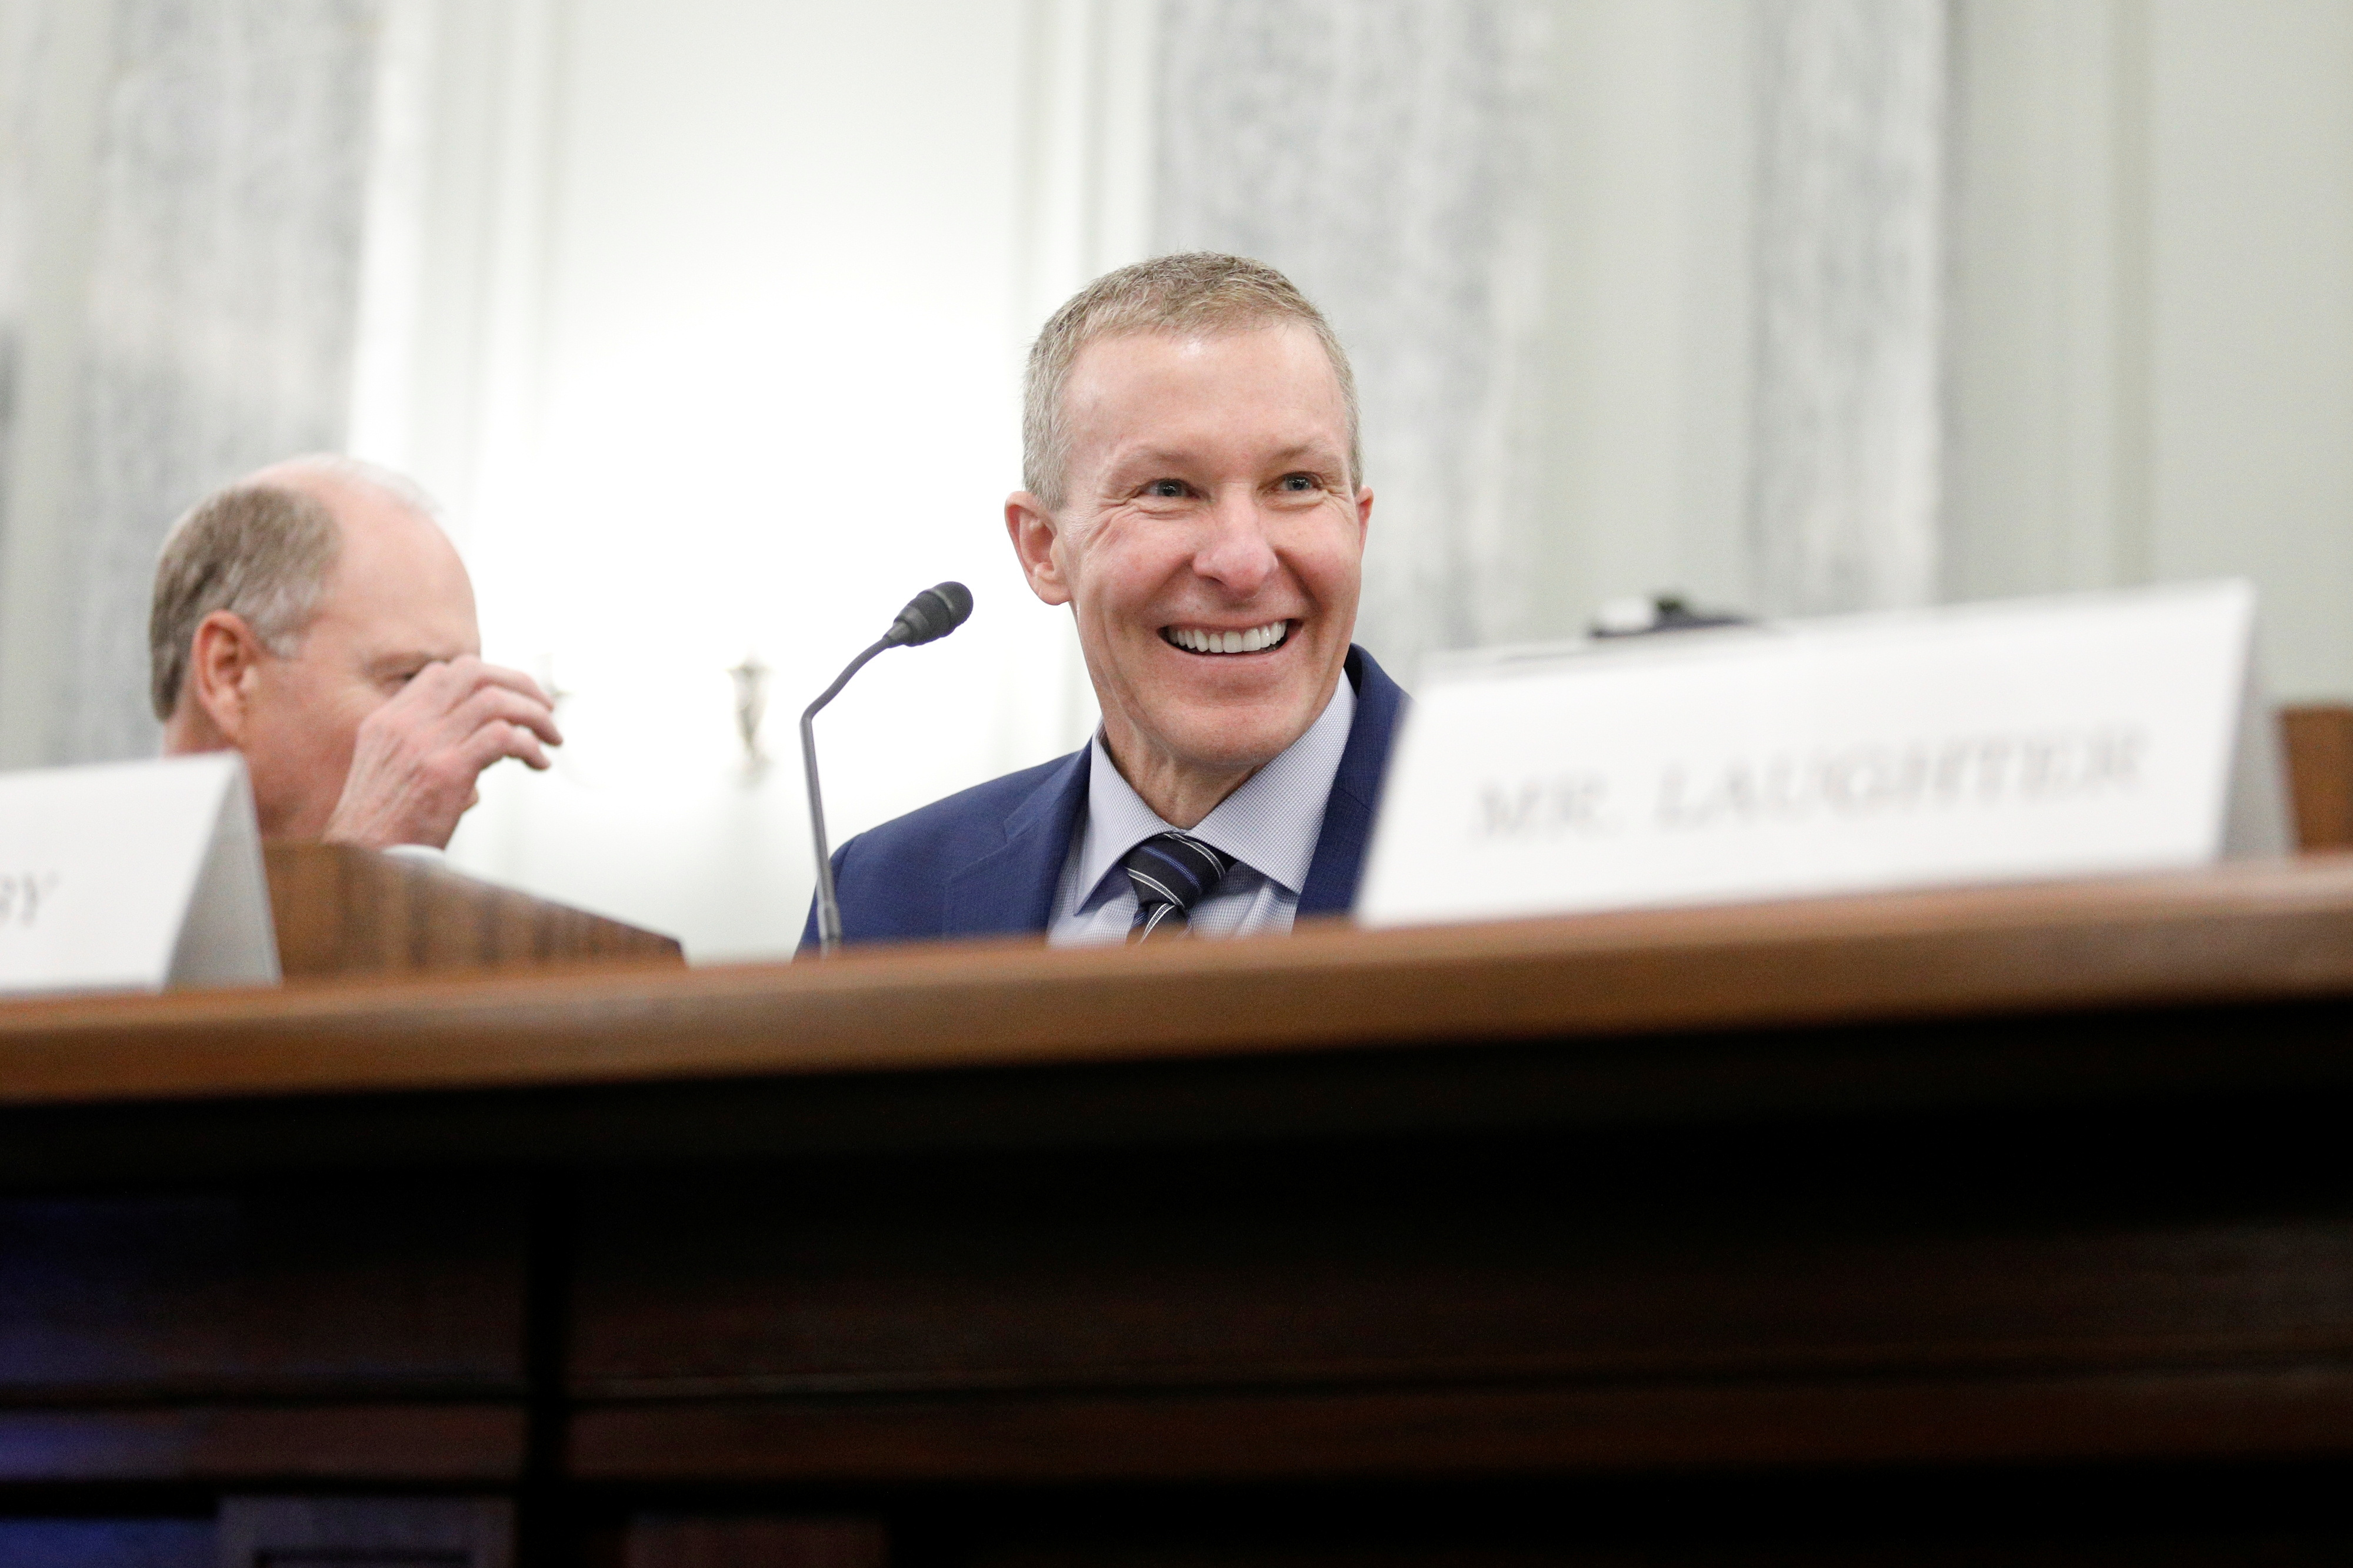 American, Delta, United CEOs testify before U.S. Senate panel